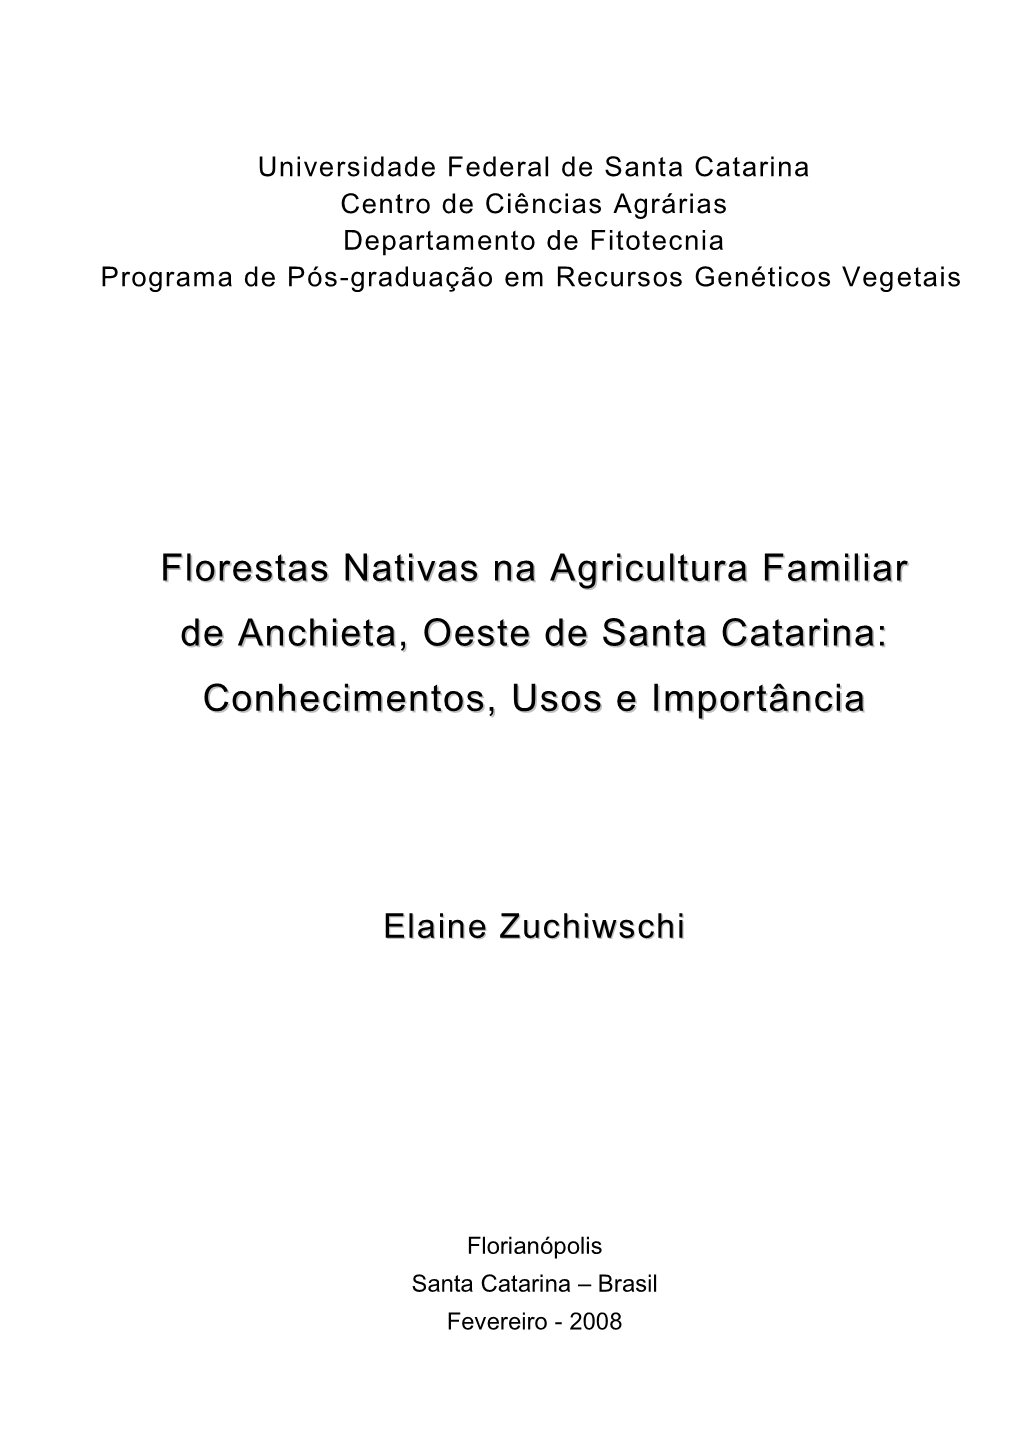 Florestas Nativas Na Agricultura Familiar De Anchieta, Oeste De Santa Catarina: Conhecimentos, Usos E Importância